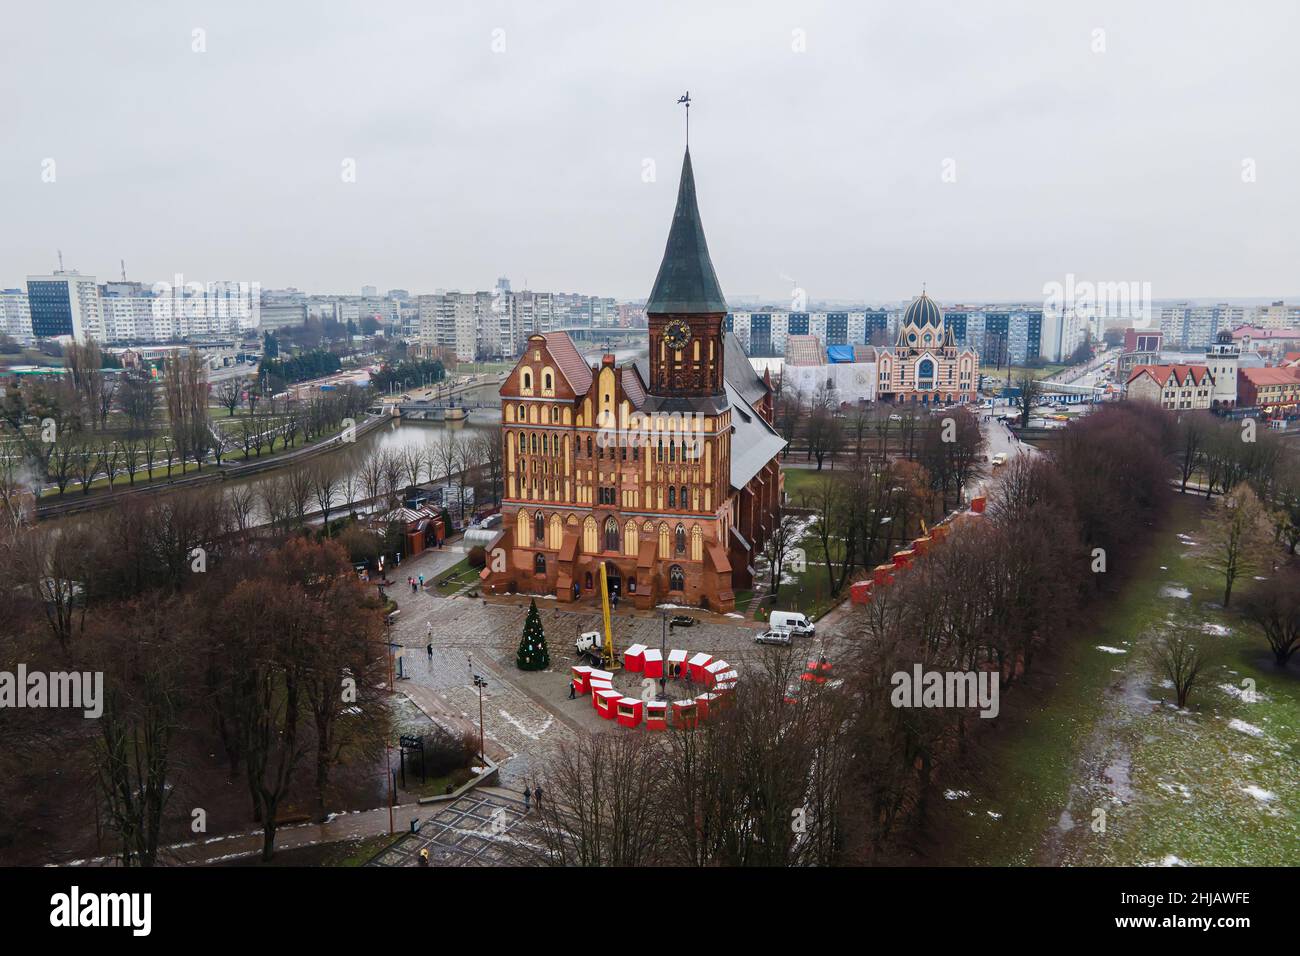 Kathedrale in der Kathedrale von Kininingrad, kenigsberg. Das Hotel liegt im historischen Viertel der Stadt Kaliningrad - Kneipof jetzt im Volksmund Kant I bezeichnet Stockfoto